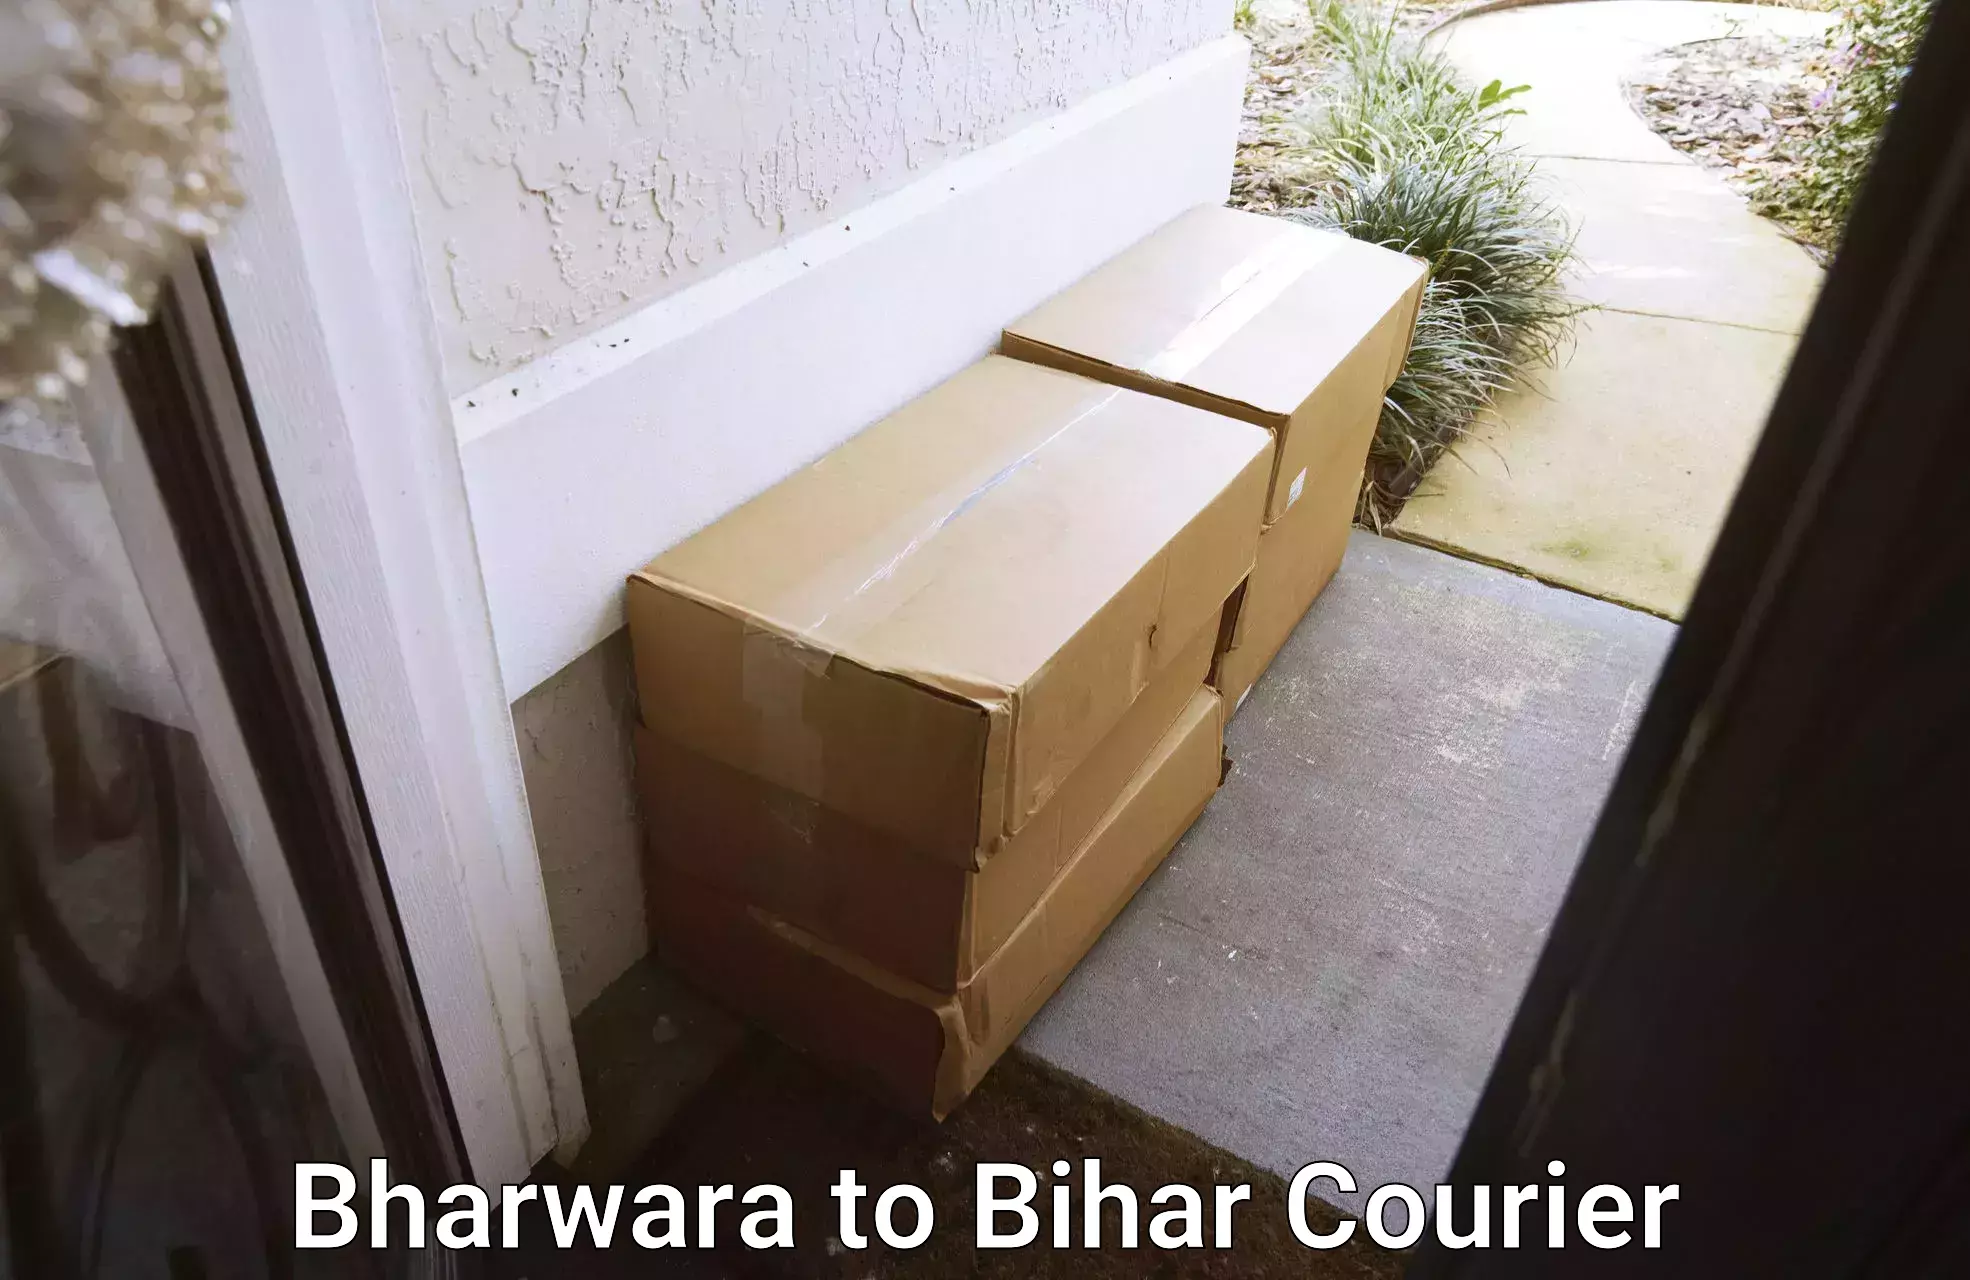 Furniture moving experts Bharwara to Bihar